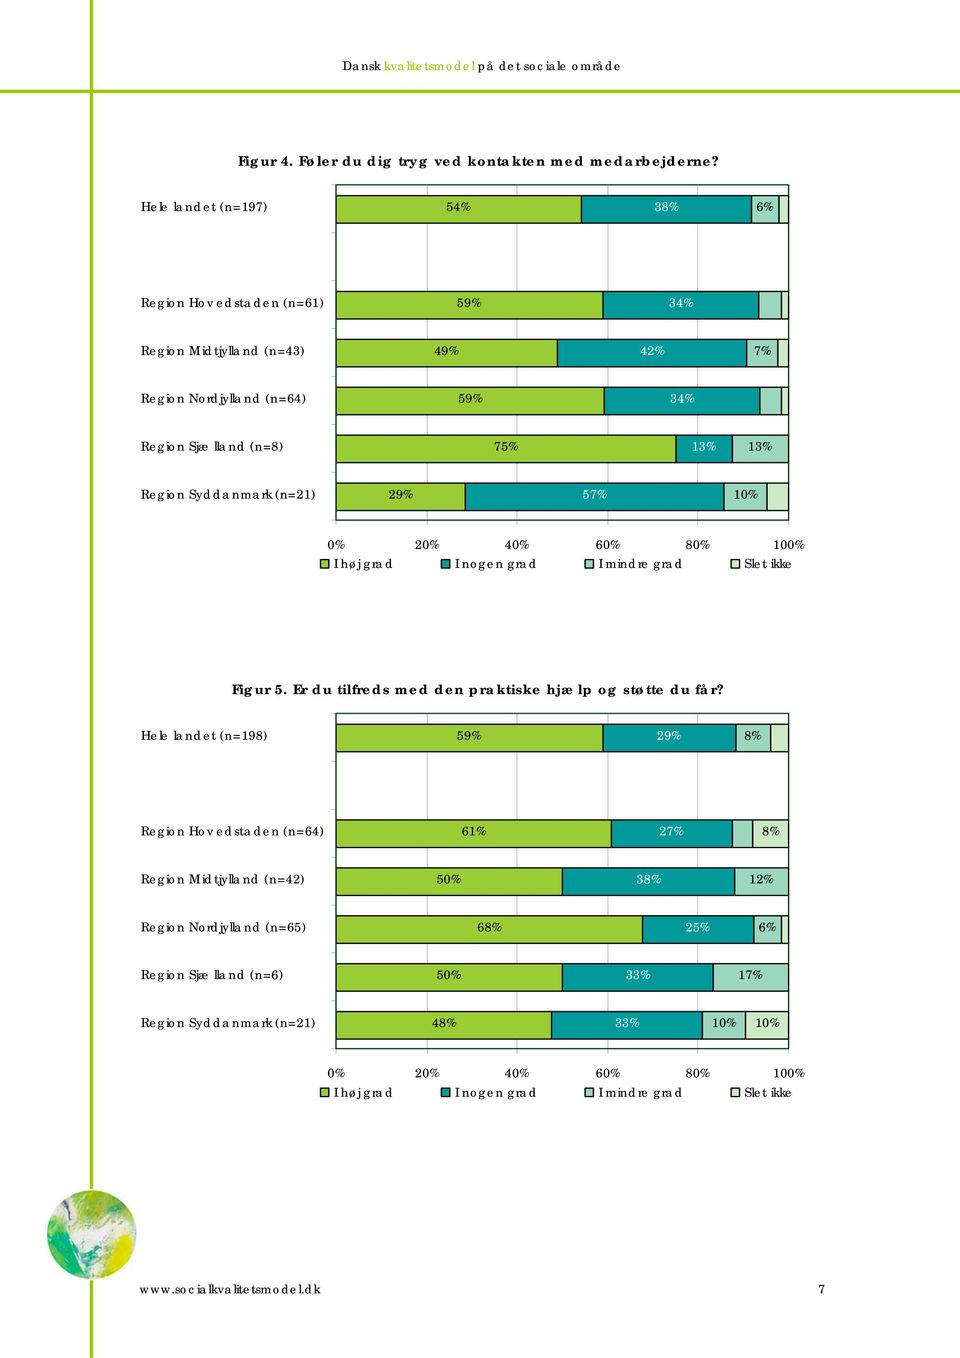 34% 75% Region Syddanmark (n=21) 29% 5 Figur 5. Er du tilfreds med den praktiske hjælp og støtte du får?